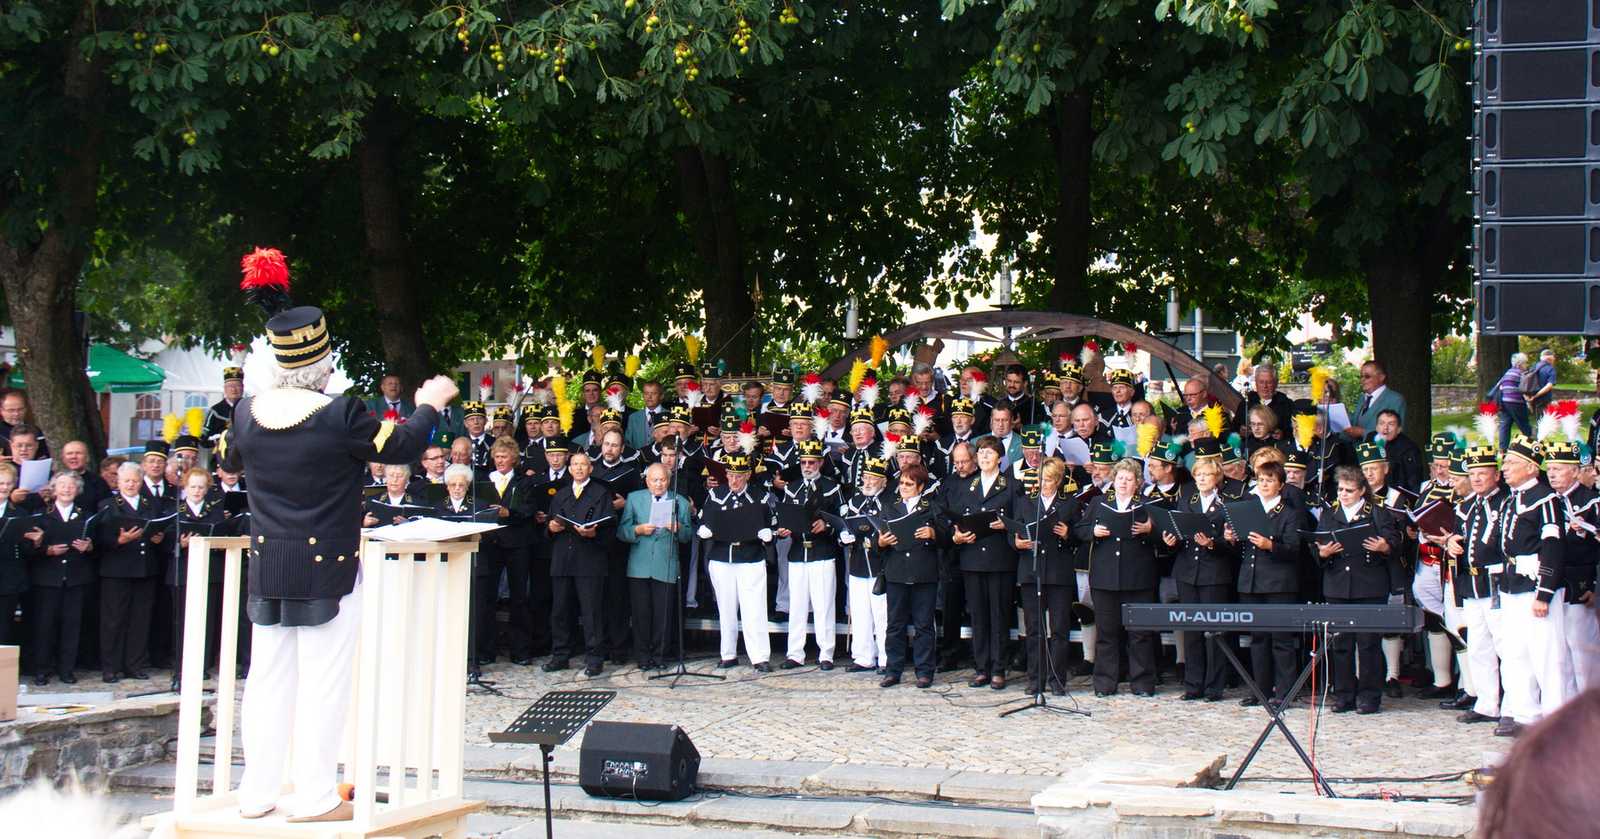 Nachdem sie jeweils ihren Auftritt absolviert hatten, kamen die Vertreter der am 5. Chortreffen der bergmännischen Chöre und Musikvereine im Rahmen des 4. Sächsischen Bergmannstag zu einem Gruppenbild zusammen.